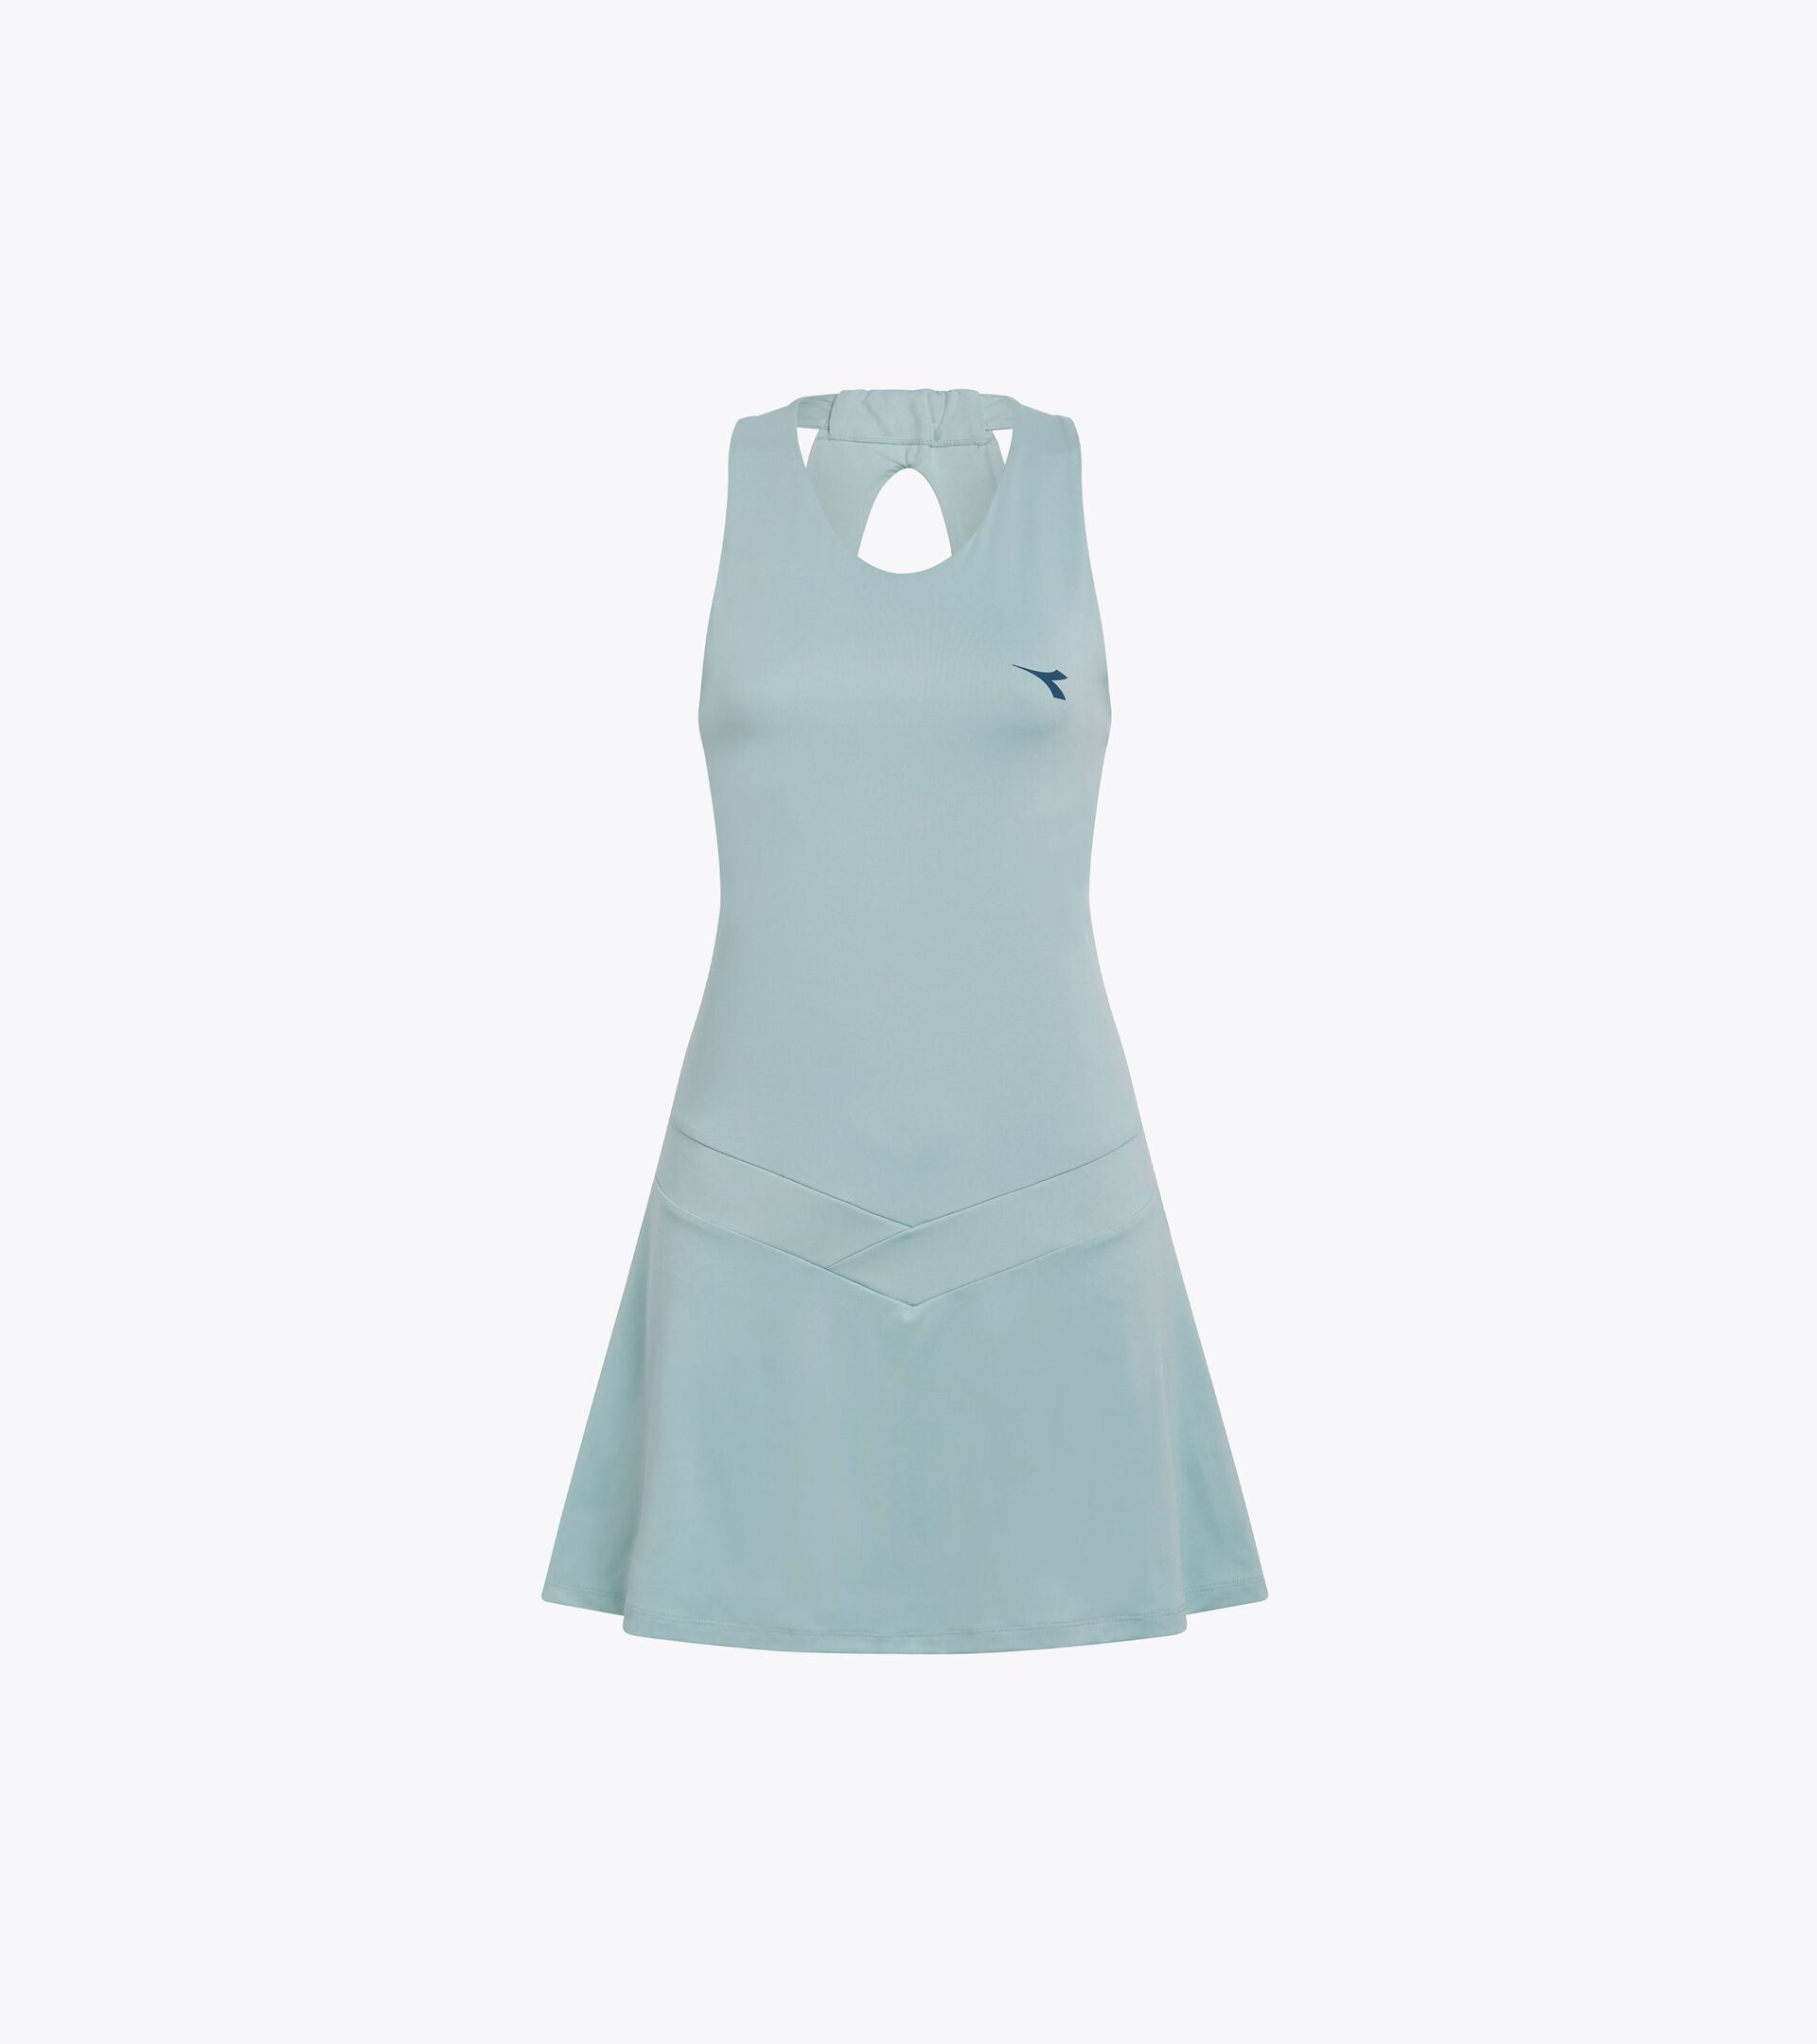 Robe de tennis - Femme
 L. DRESS ICON SURF GOUTTELETTES - Diadora